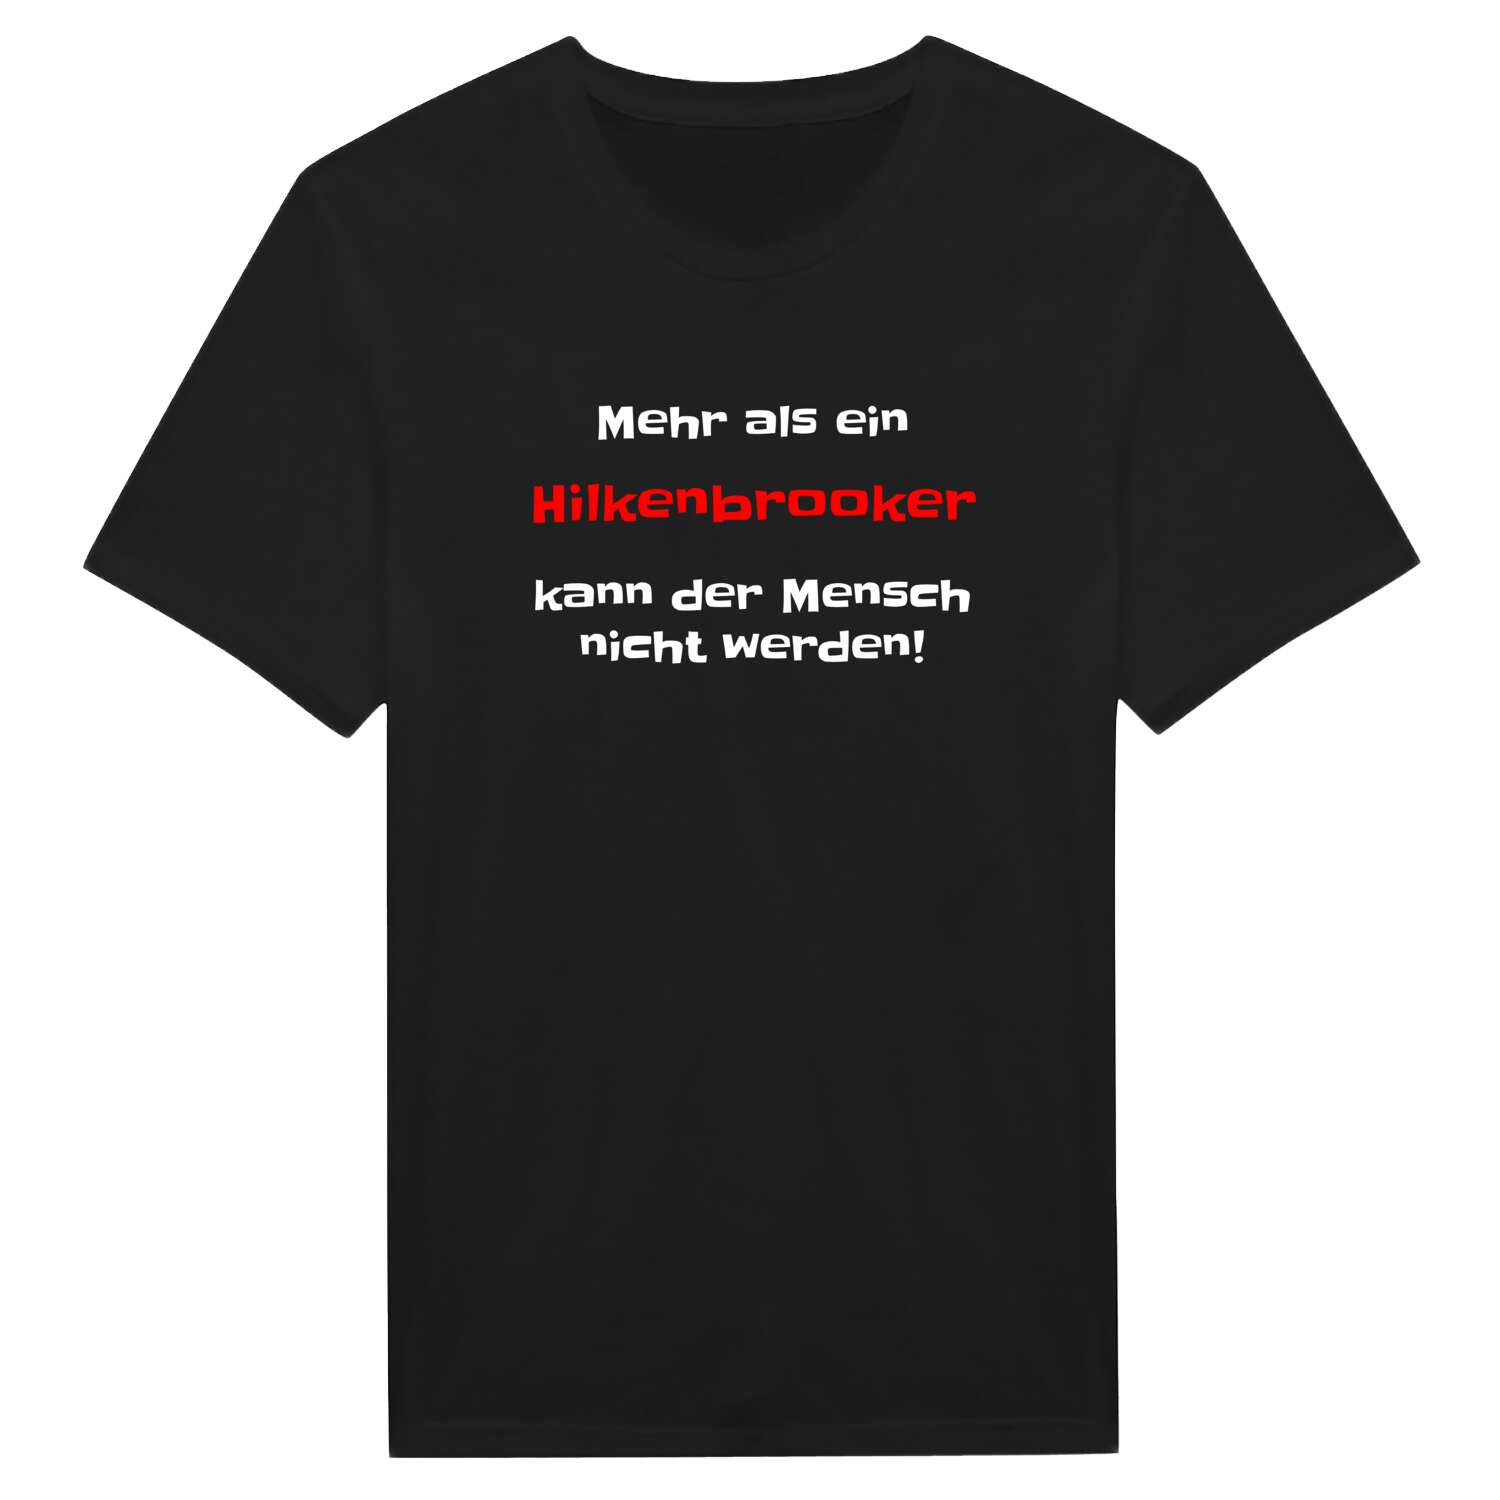 Hilkenbrook T-Shirt »Mehr als ein«